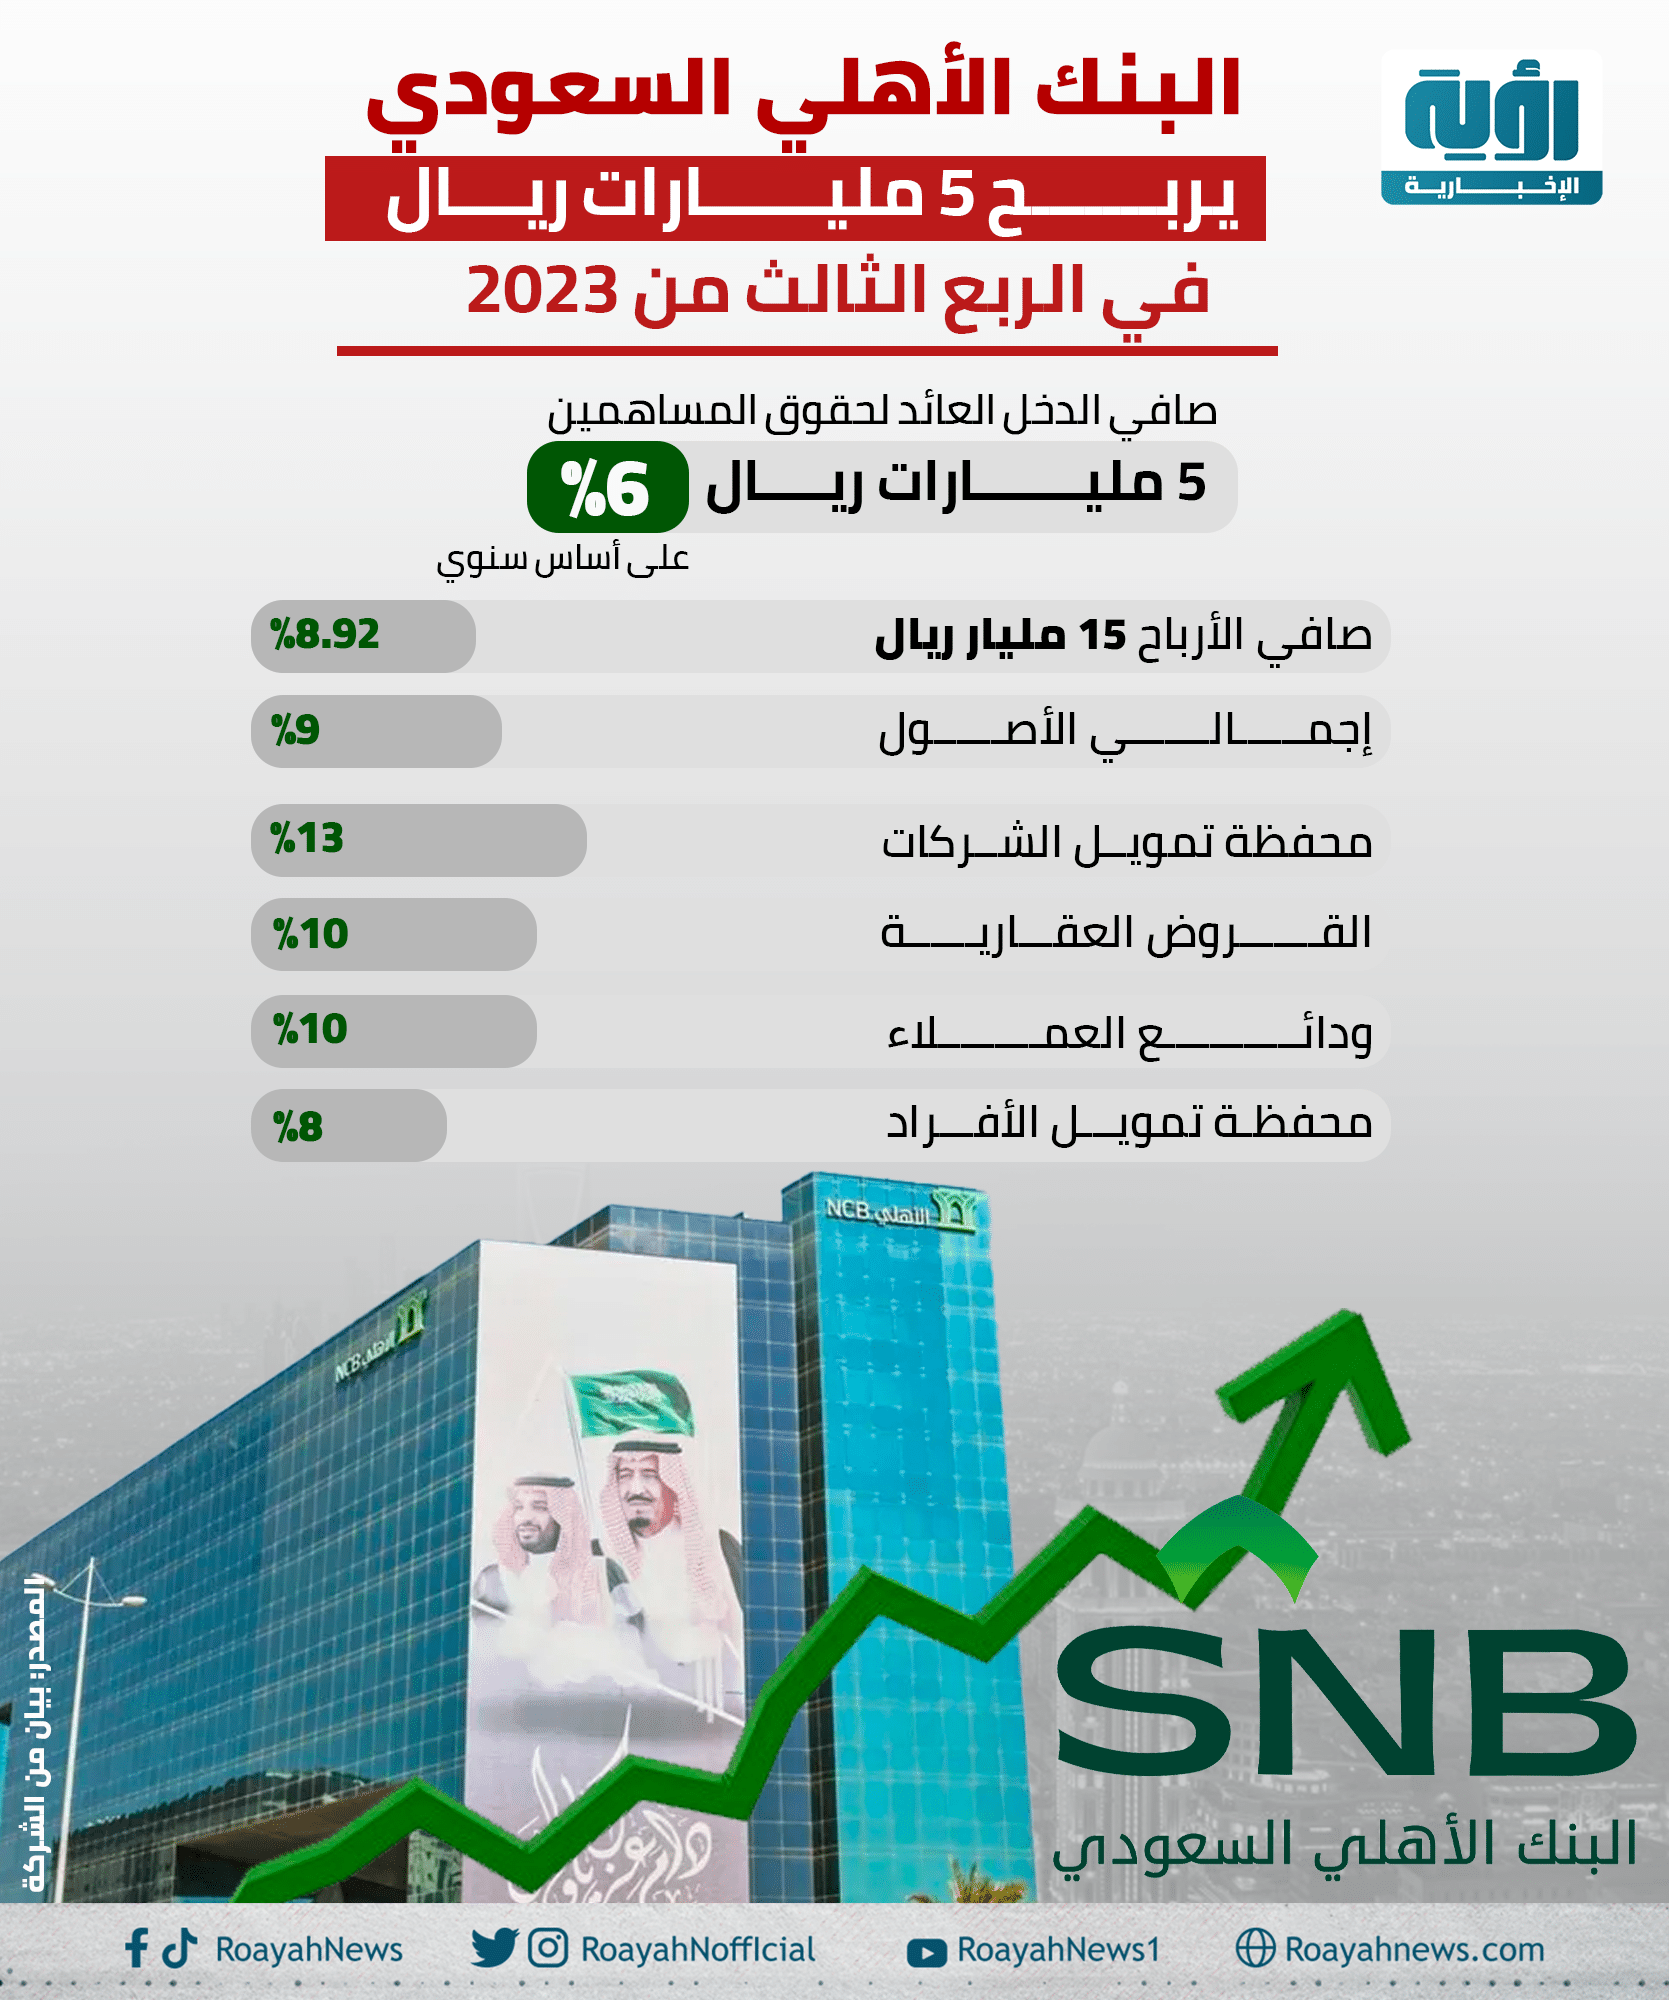 البنك الأهلي السعودي يربح 5 مليارات ريال في الربع الثالث من 2023